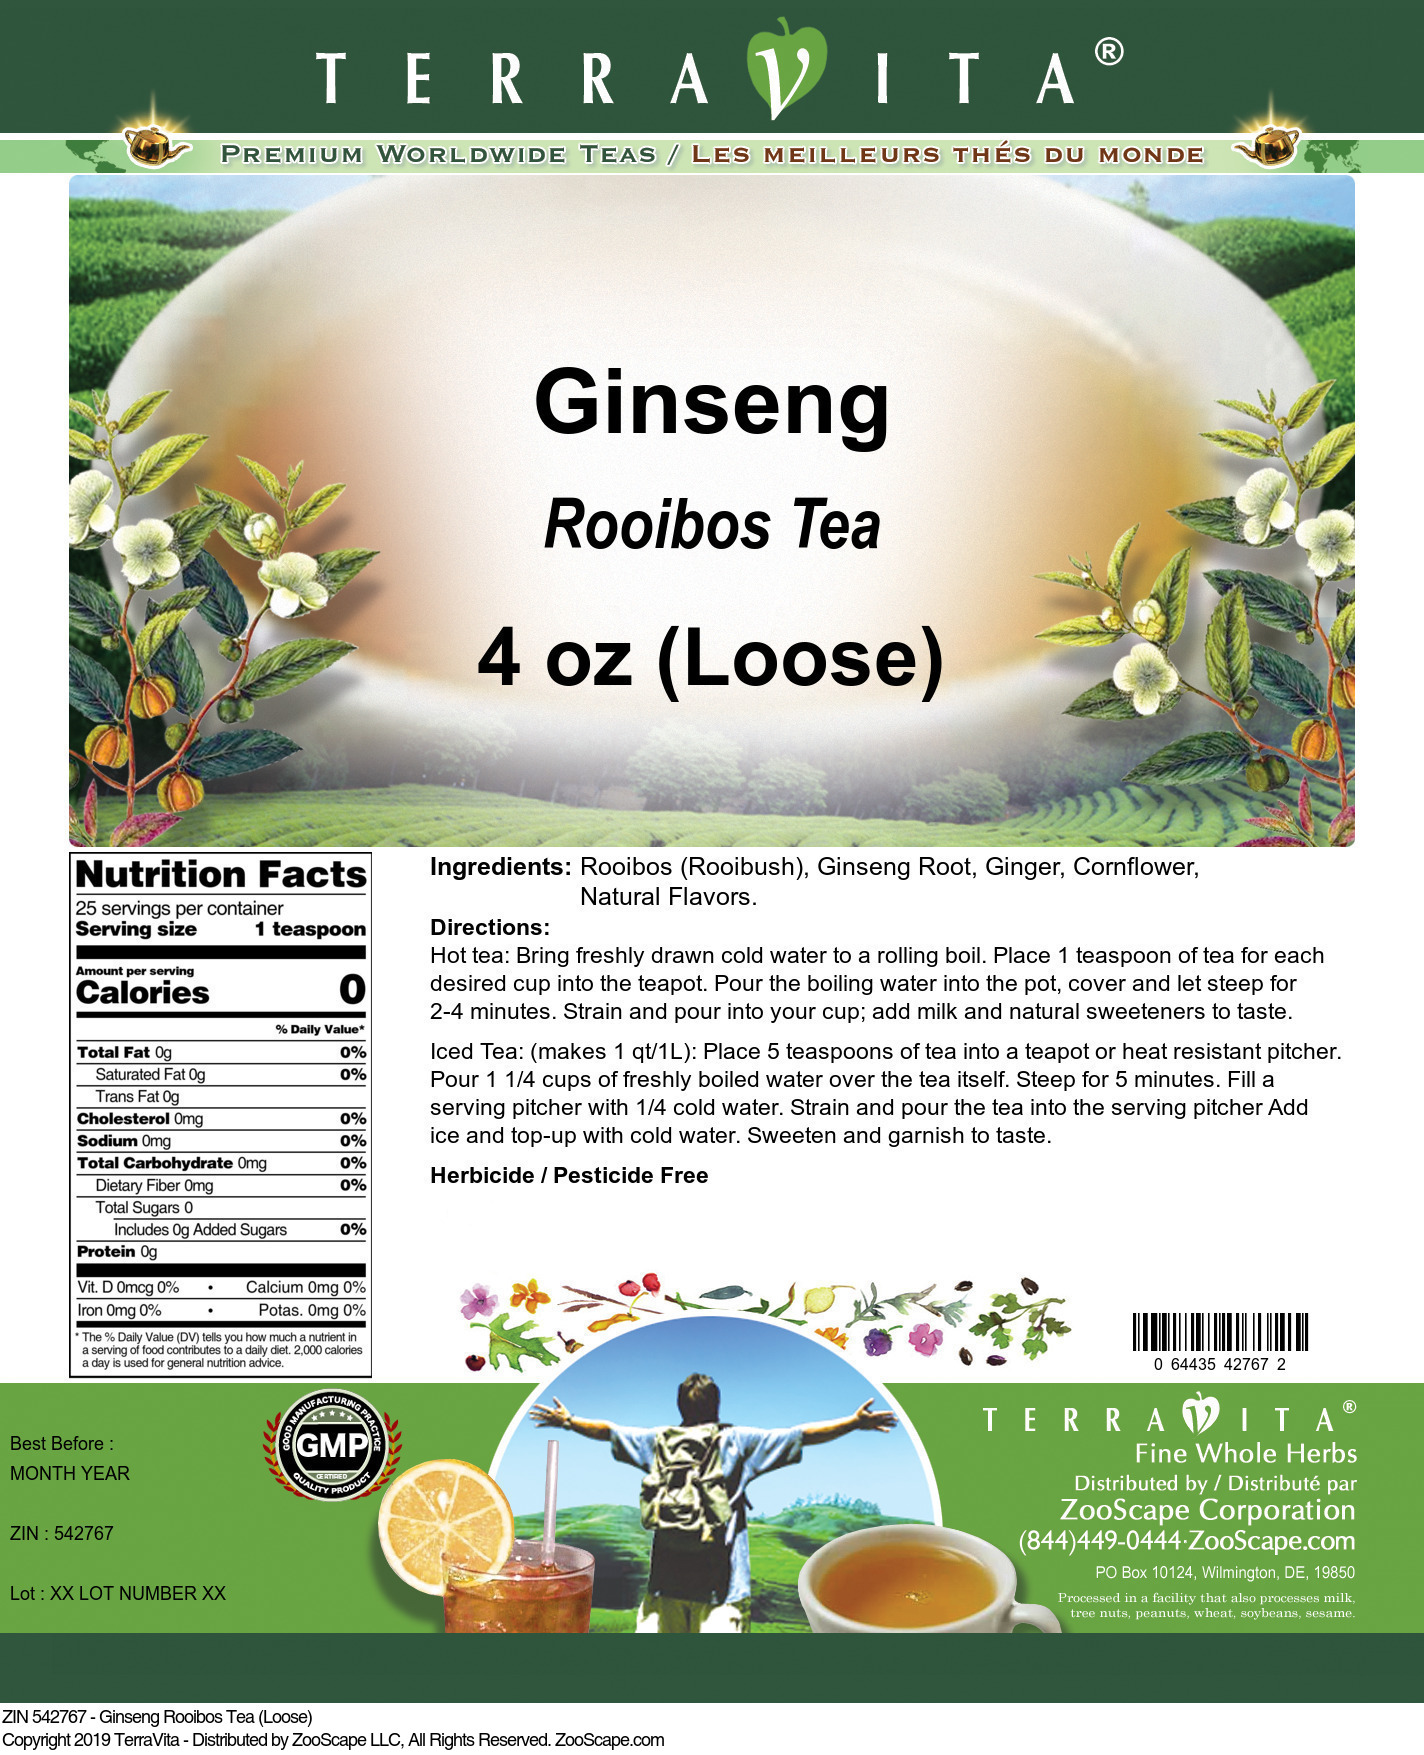 Ginseng Rooibos Tea (Loose) - Label